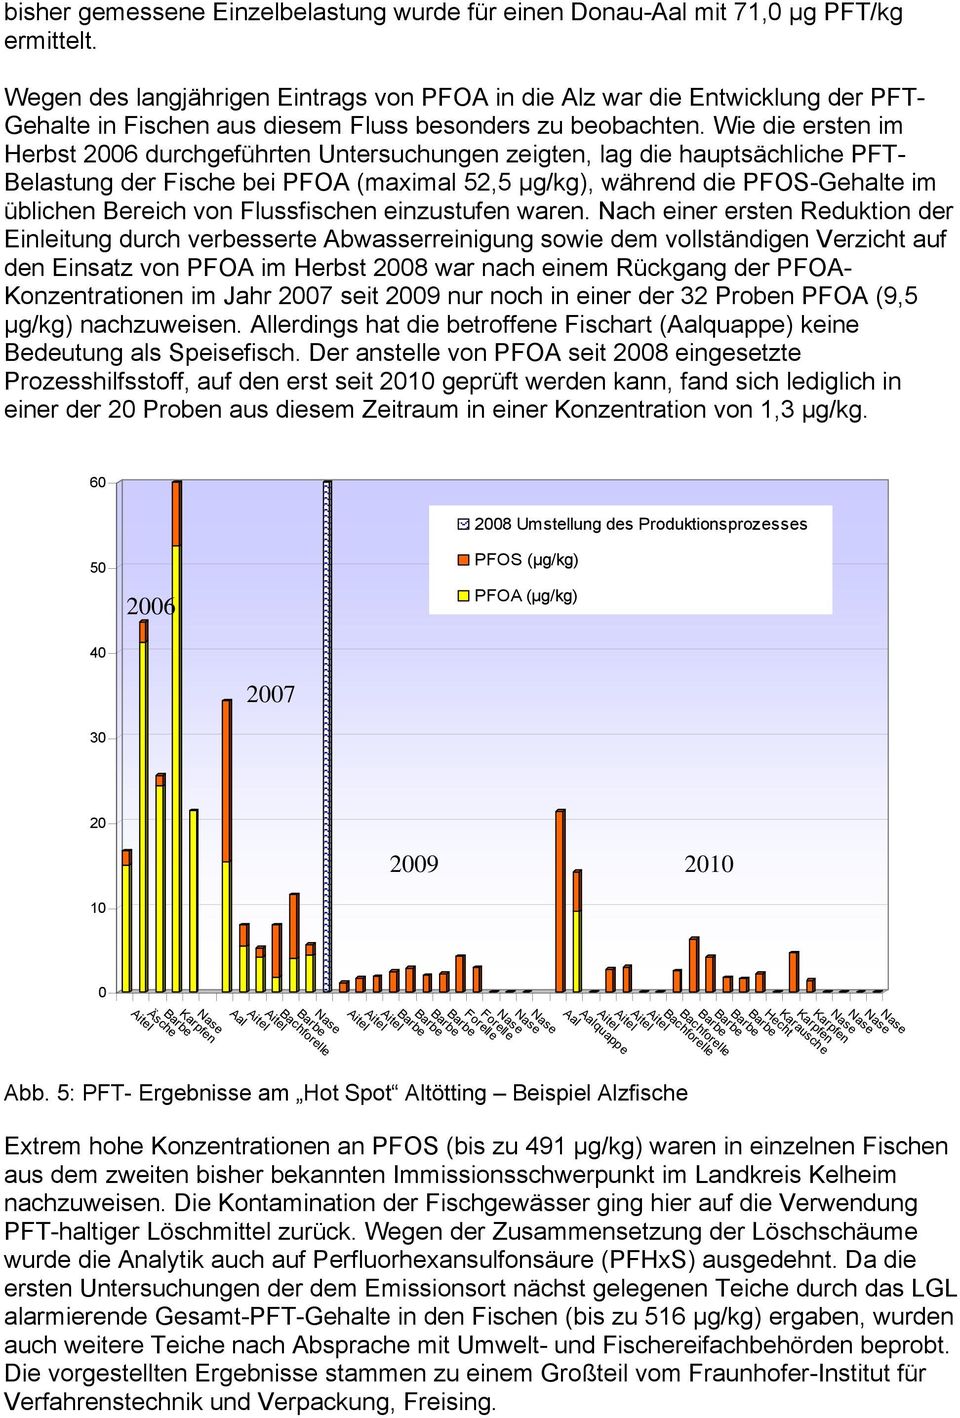 Wie die ersten im Herbst 2006 durchgeführten Untersuchungen zeigten, lag die hauptsächliche PFT- Belastung der Fische bei PFOA (maximal 52,5 µg/kg), während die PFOS-Gehalte im üblichen Bereich von